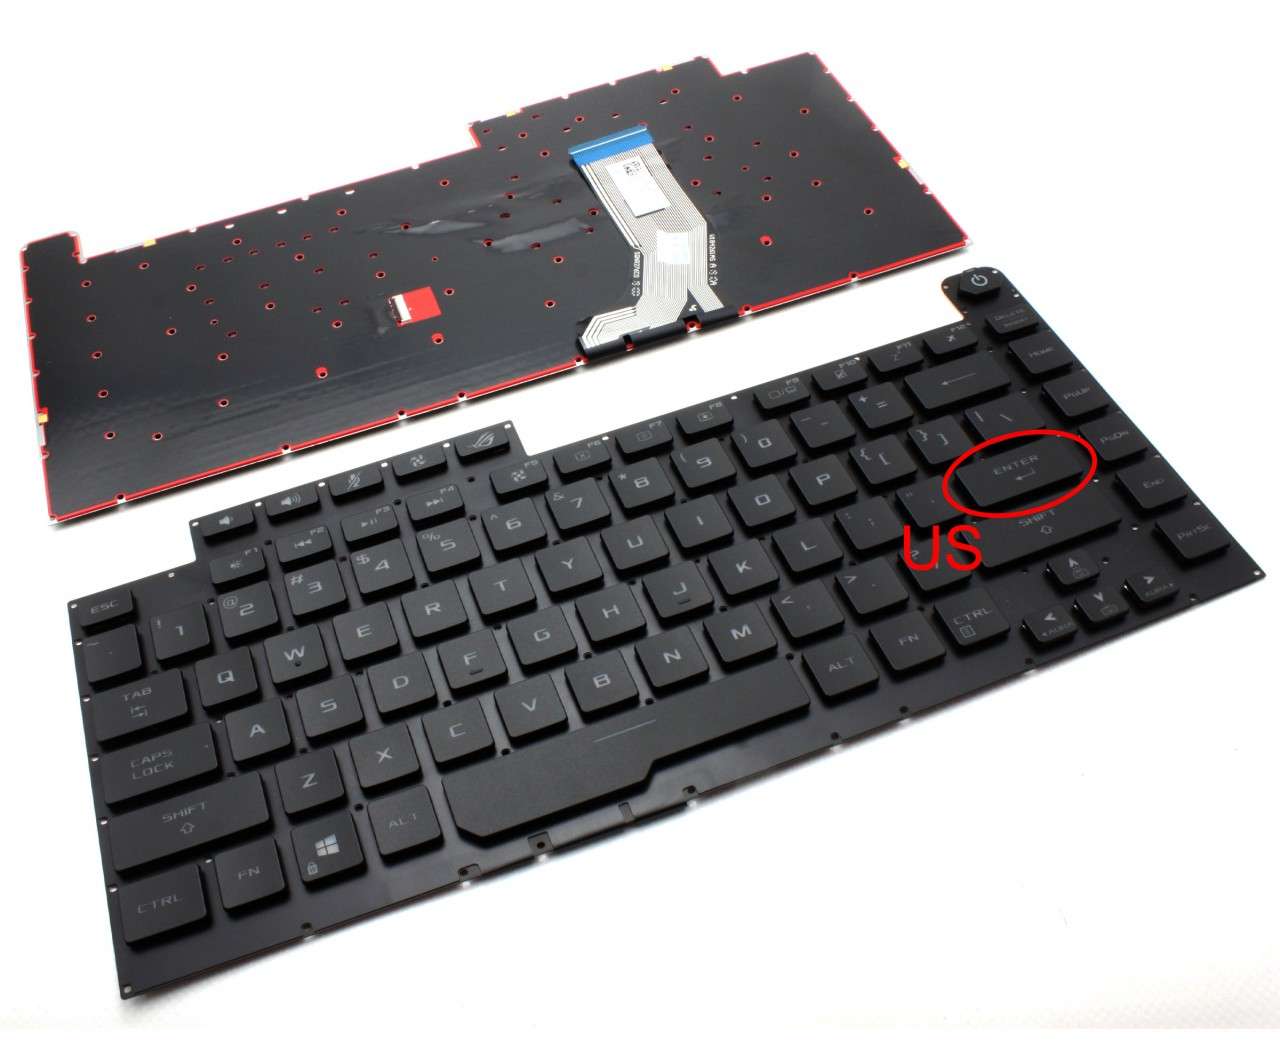 Tastatura Asus 0KNR0-4614US00 iluminata layout US fara rama enter mic